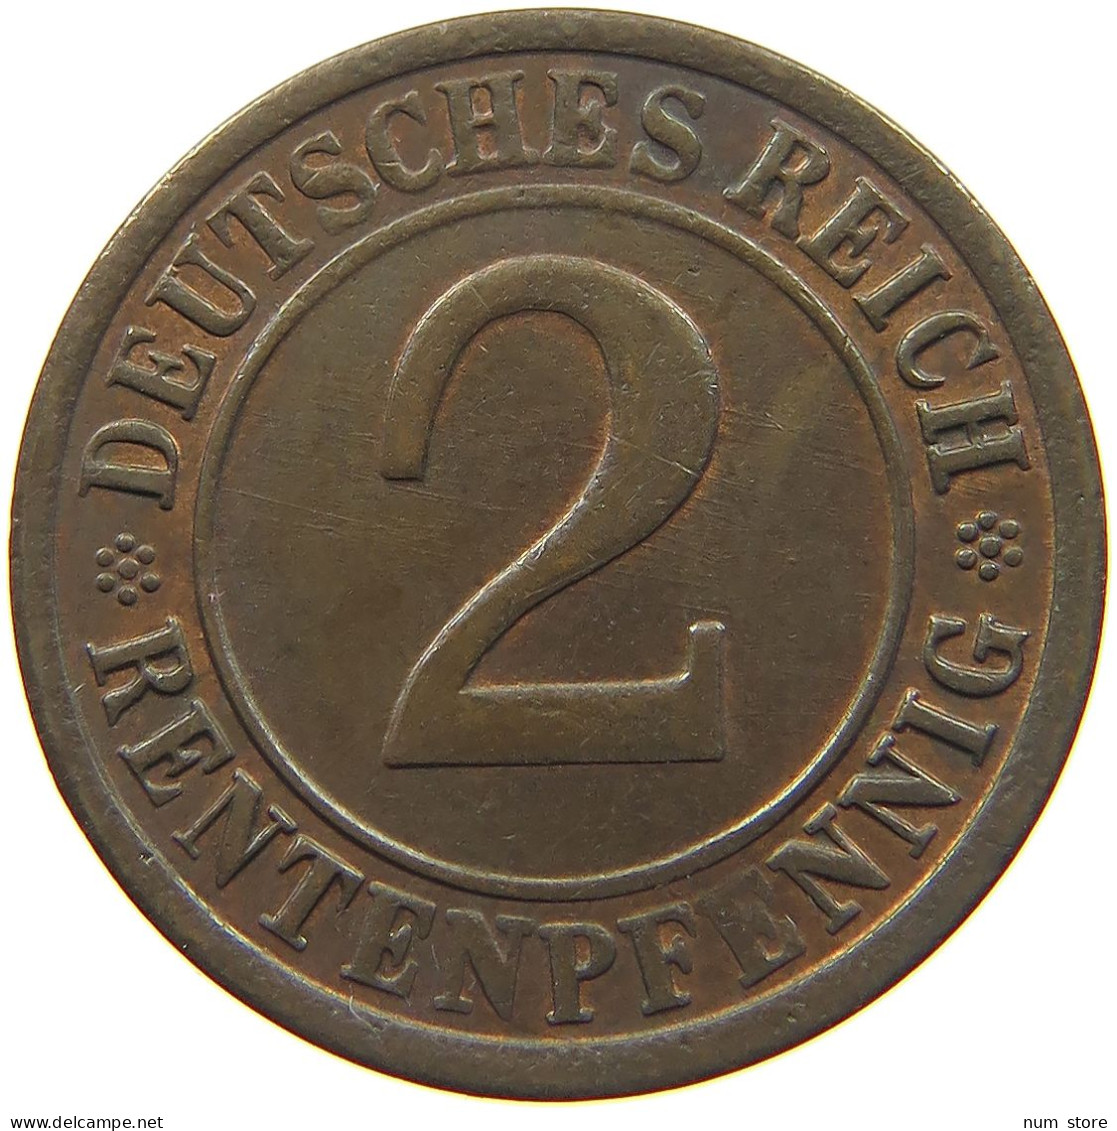 WEIMARER REPUBLIK 2 RENTENPFENNIG 1923 G  #MA 022574 - 2 Renten- & 2 Reichspfennig